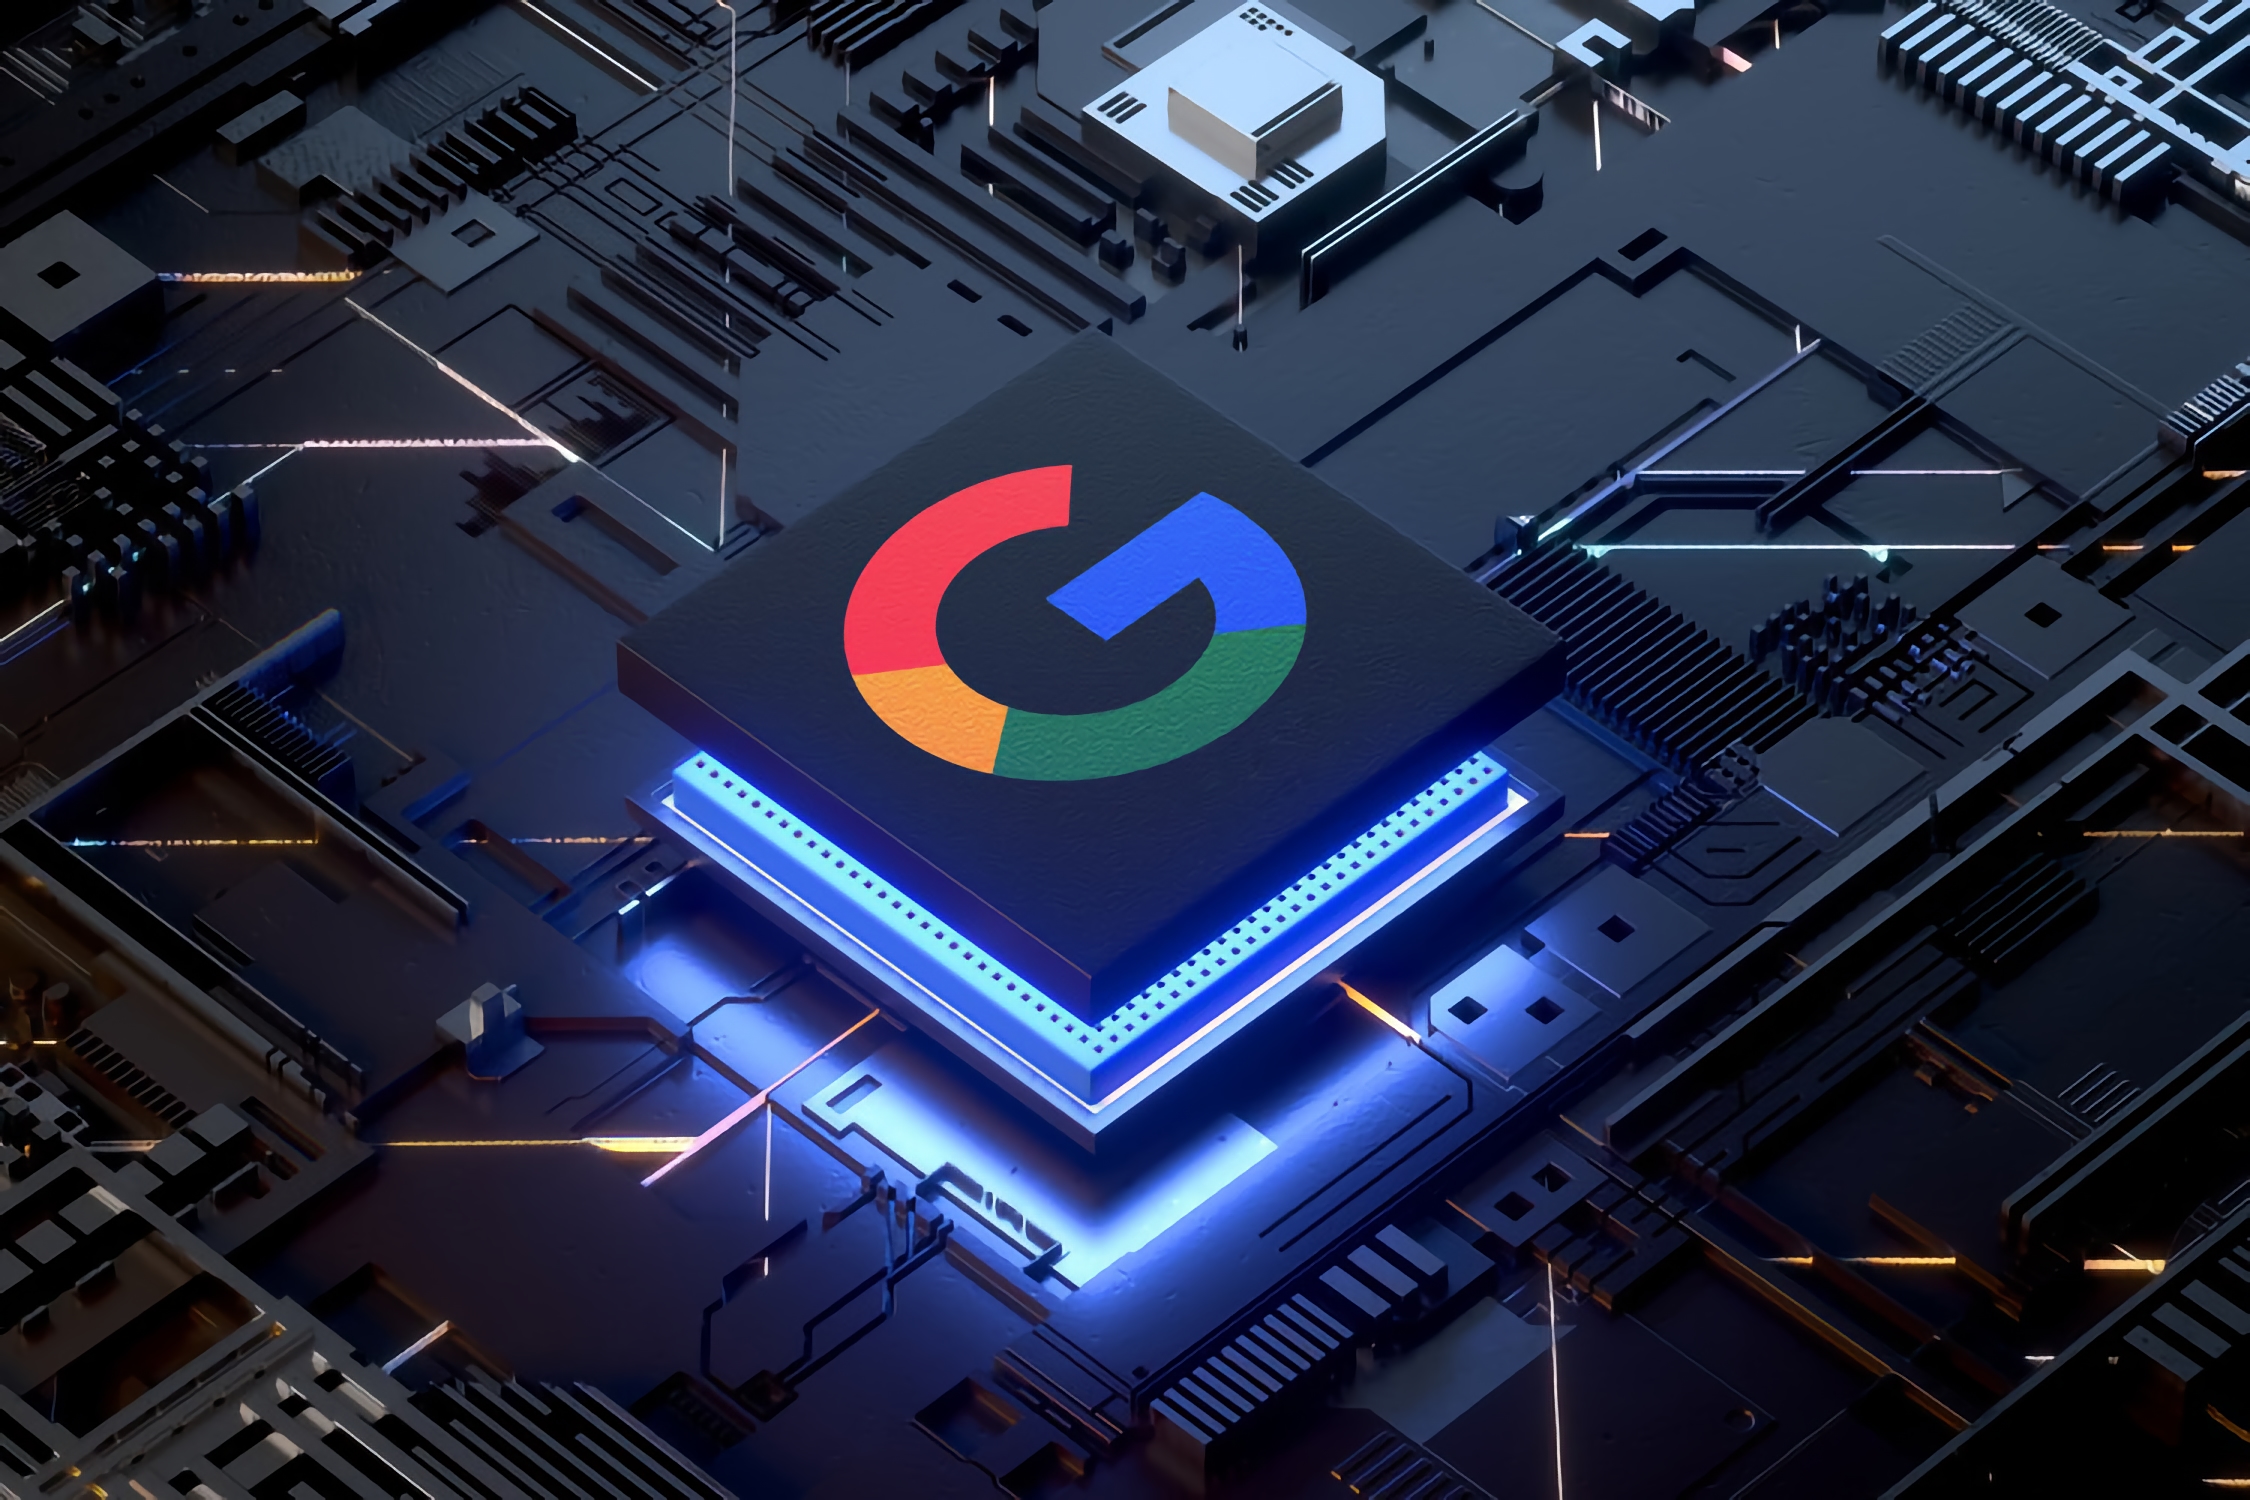 Szczegóły na temat układu Whitechapel Google dla Pixel 6 pojawiły się w sieci: osiem rdzeni, 5 nanometrów, i Snapdragon 870 poziom mocy